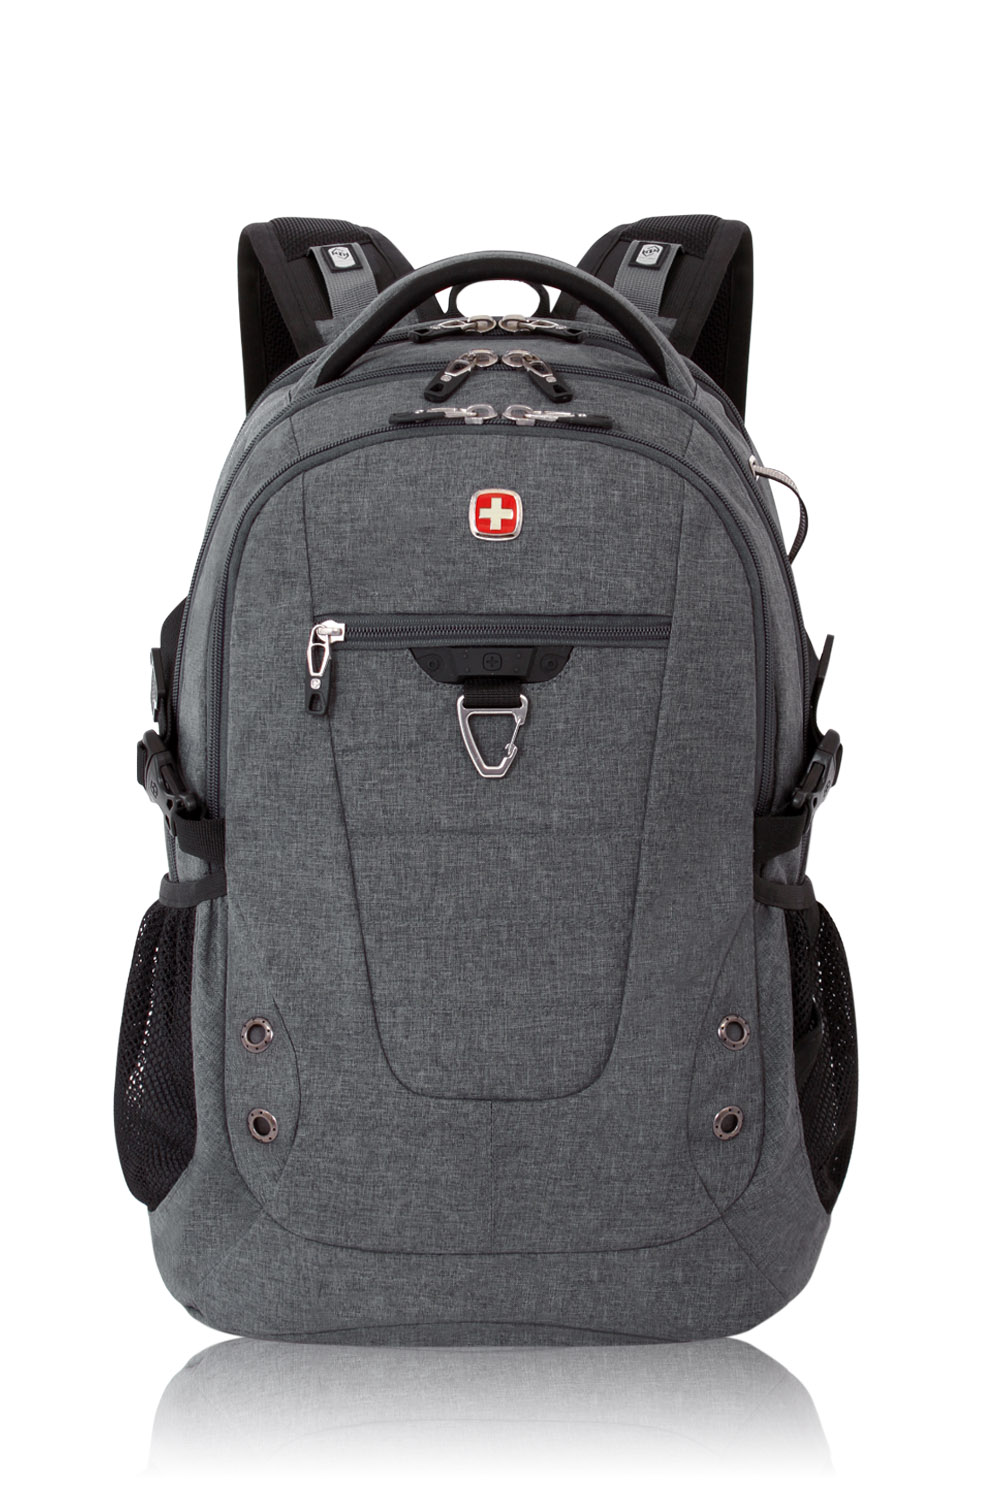 Swissgear 5319 Laptop Backpack